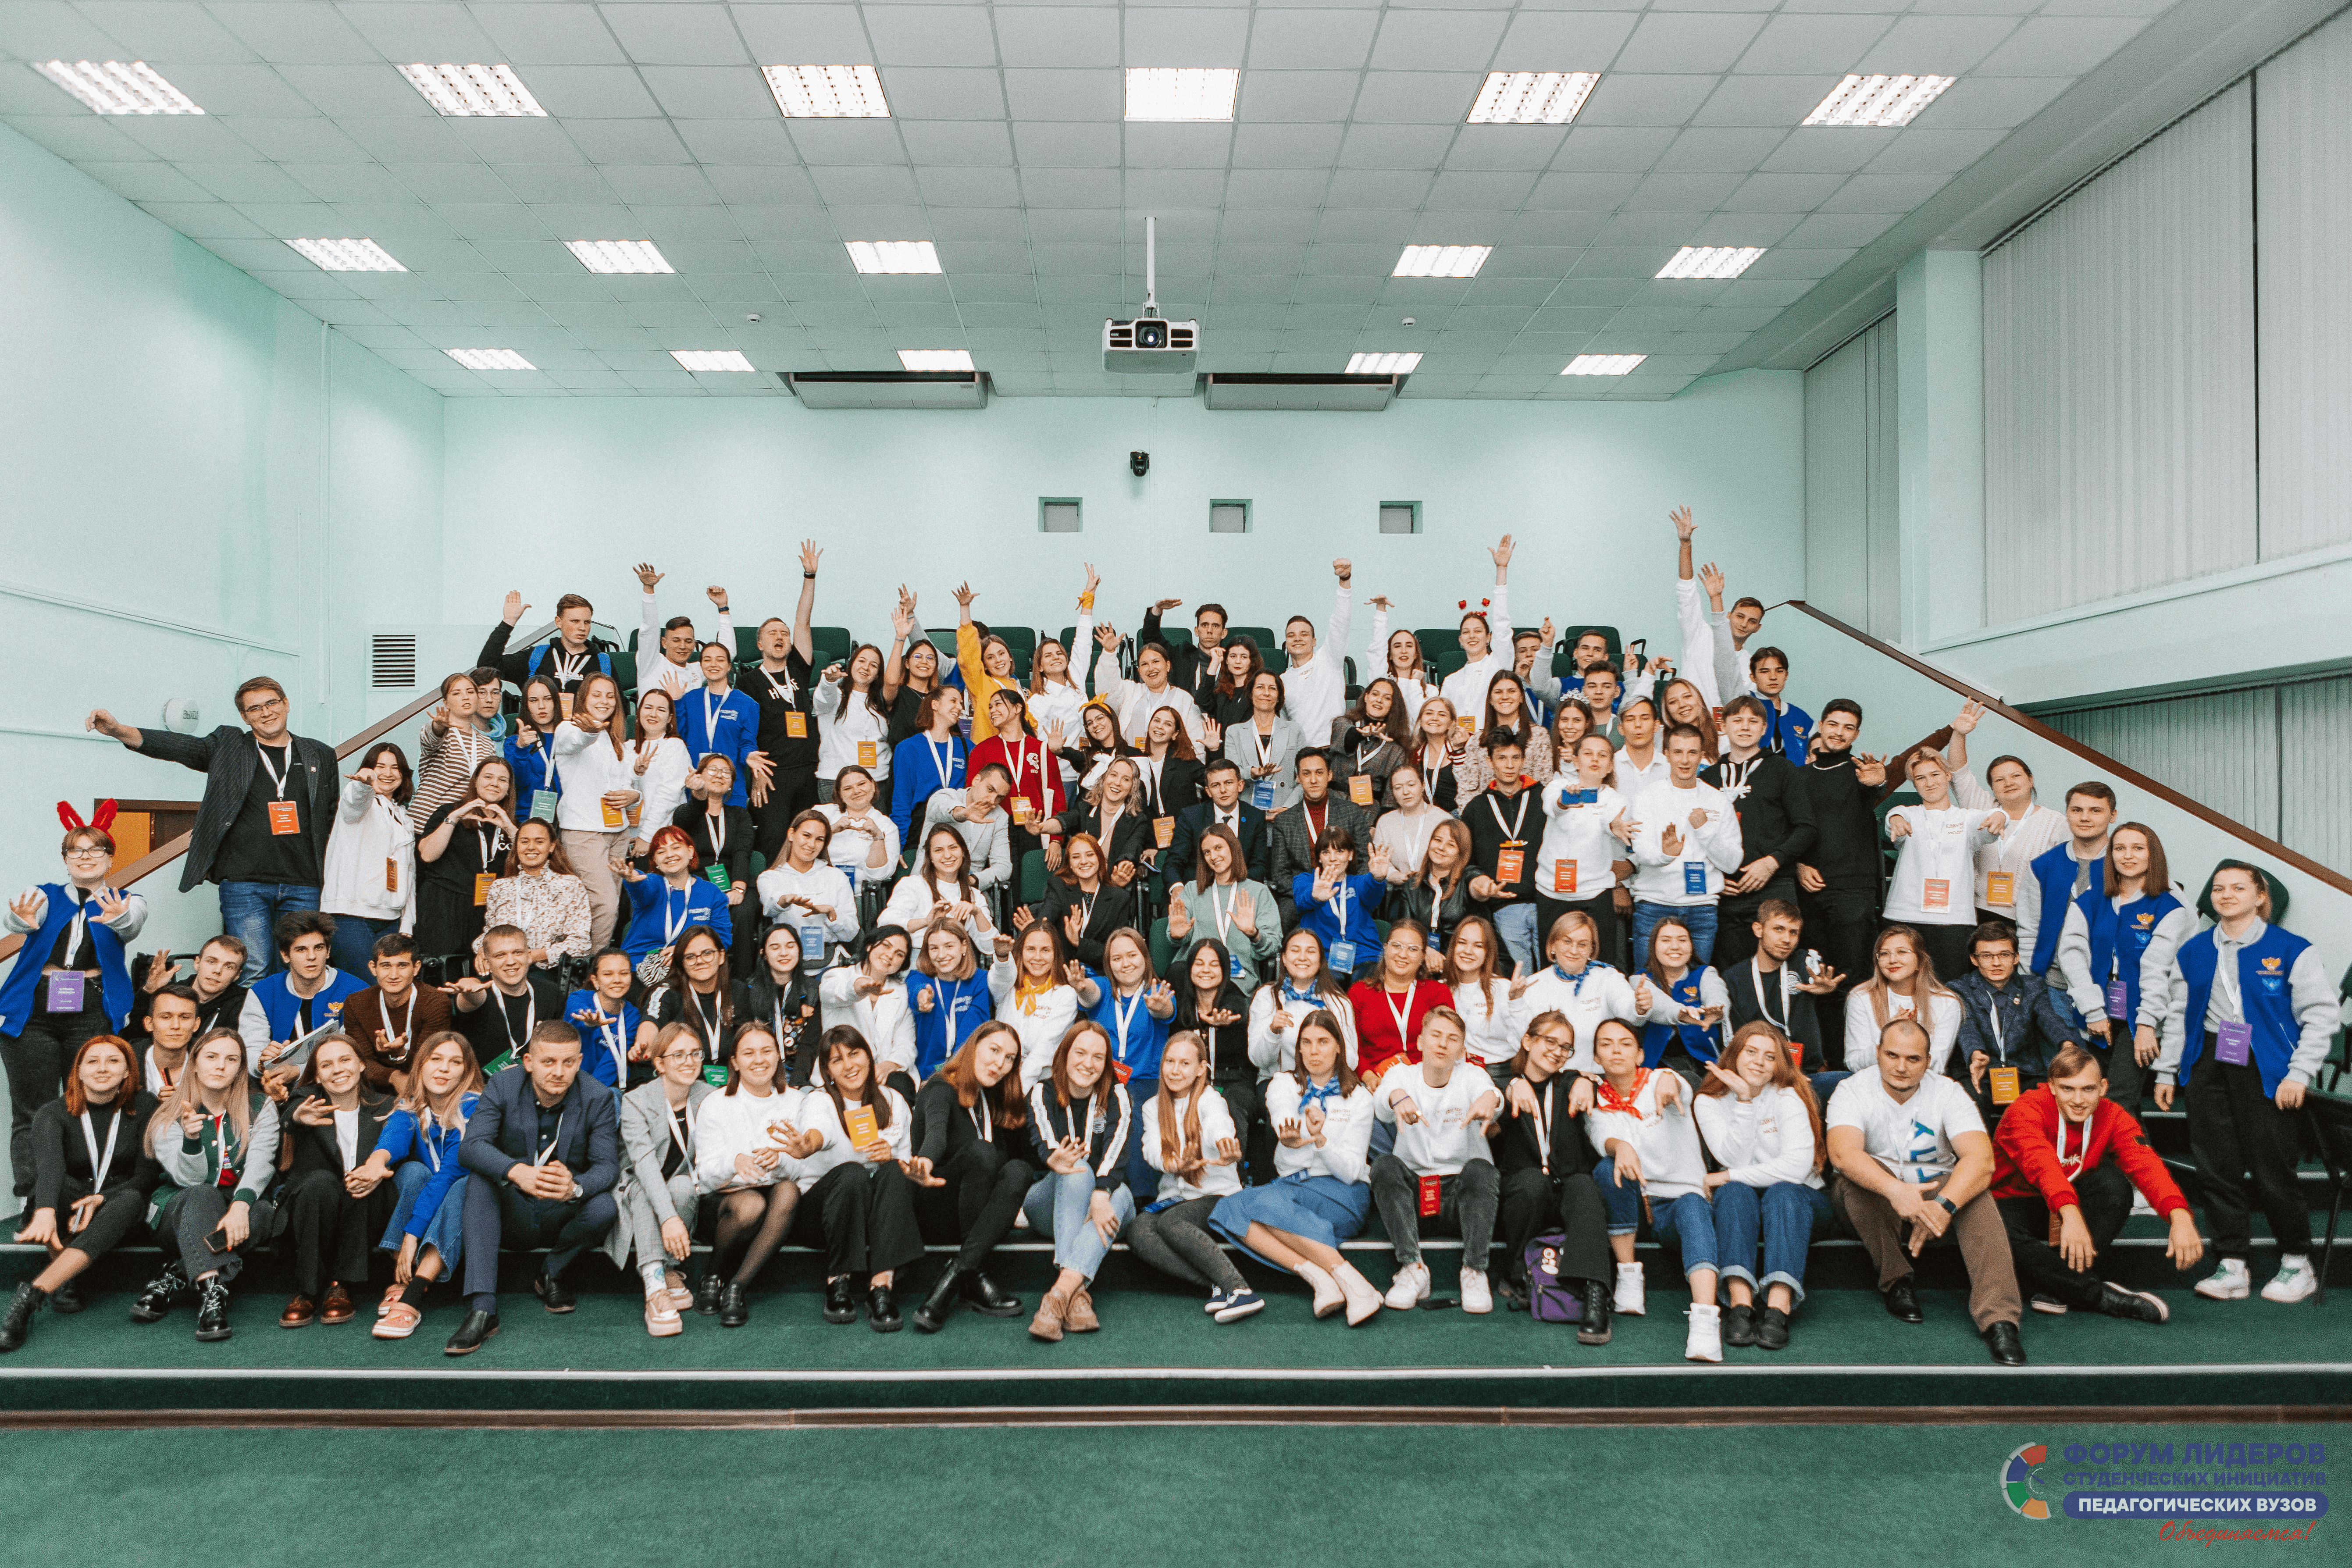 Команда Мининского отправилась на форум лидеров студенческих инициатив педагогических вузов